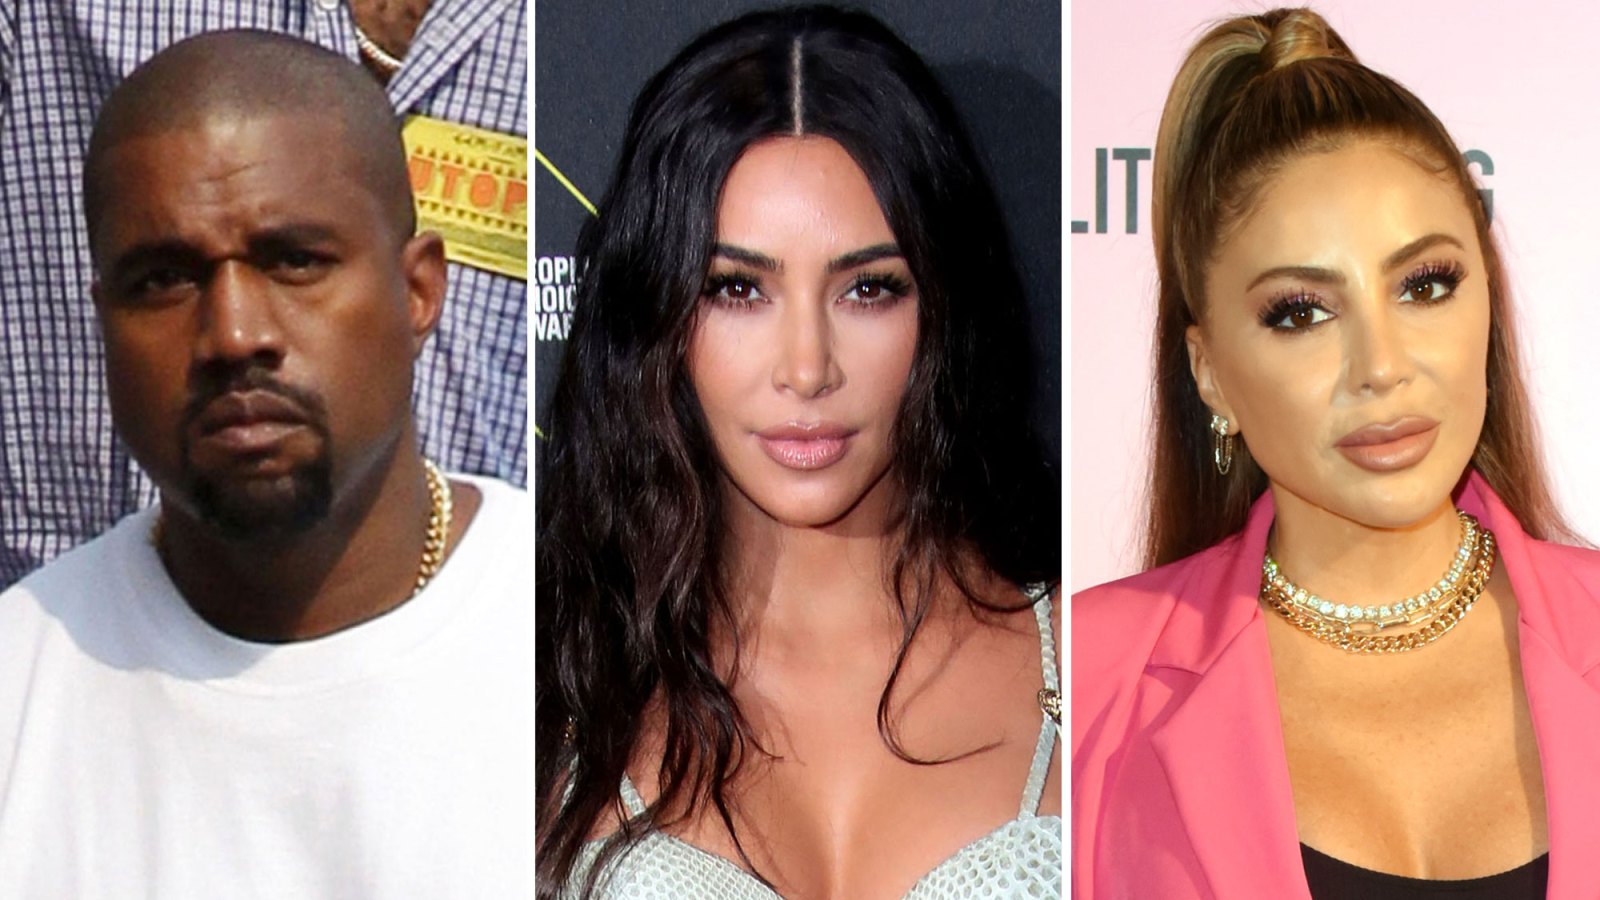 Kanye West Showed Support for Kim Kardashian's Former Friend Larsa Pippen After She Slammed False Body Comments